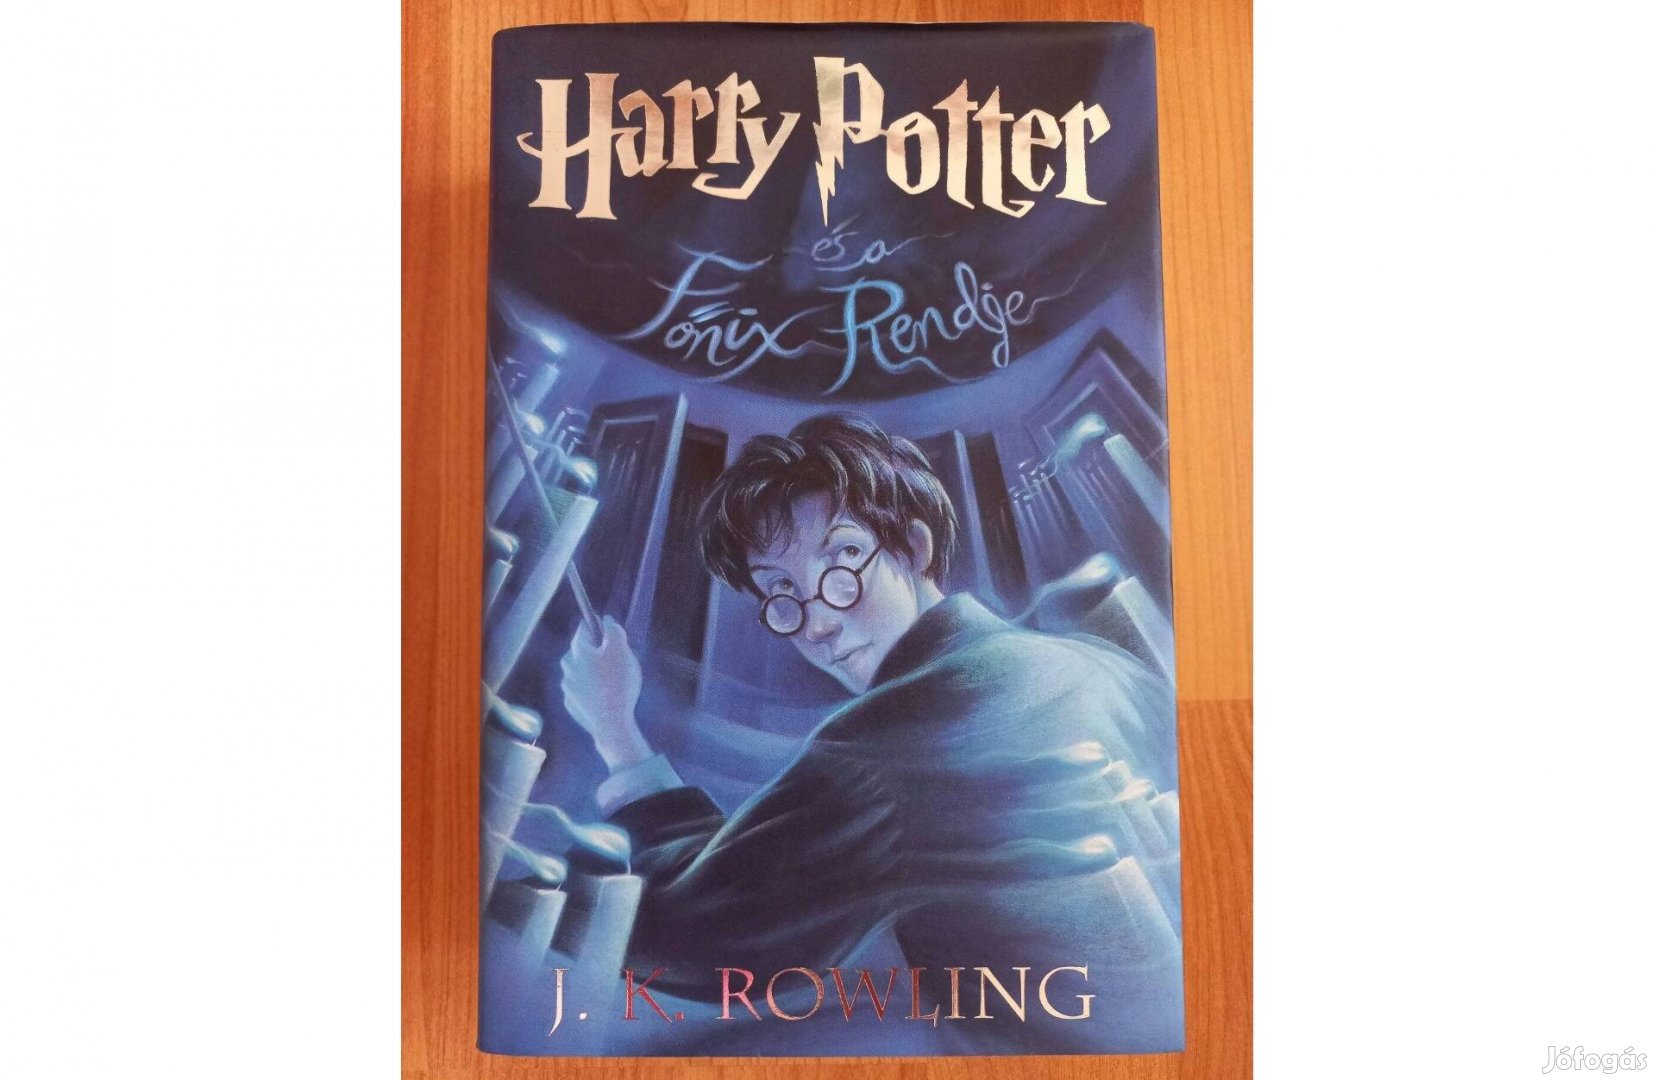 Eladó Harry Potter és a Főnix Rendje c. könyv, szerzője J. K. Rowling